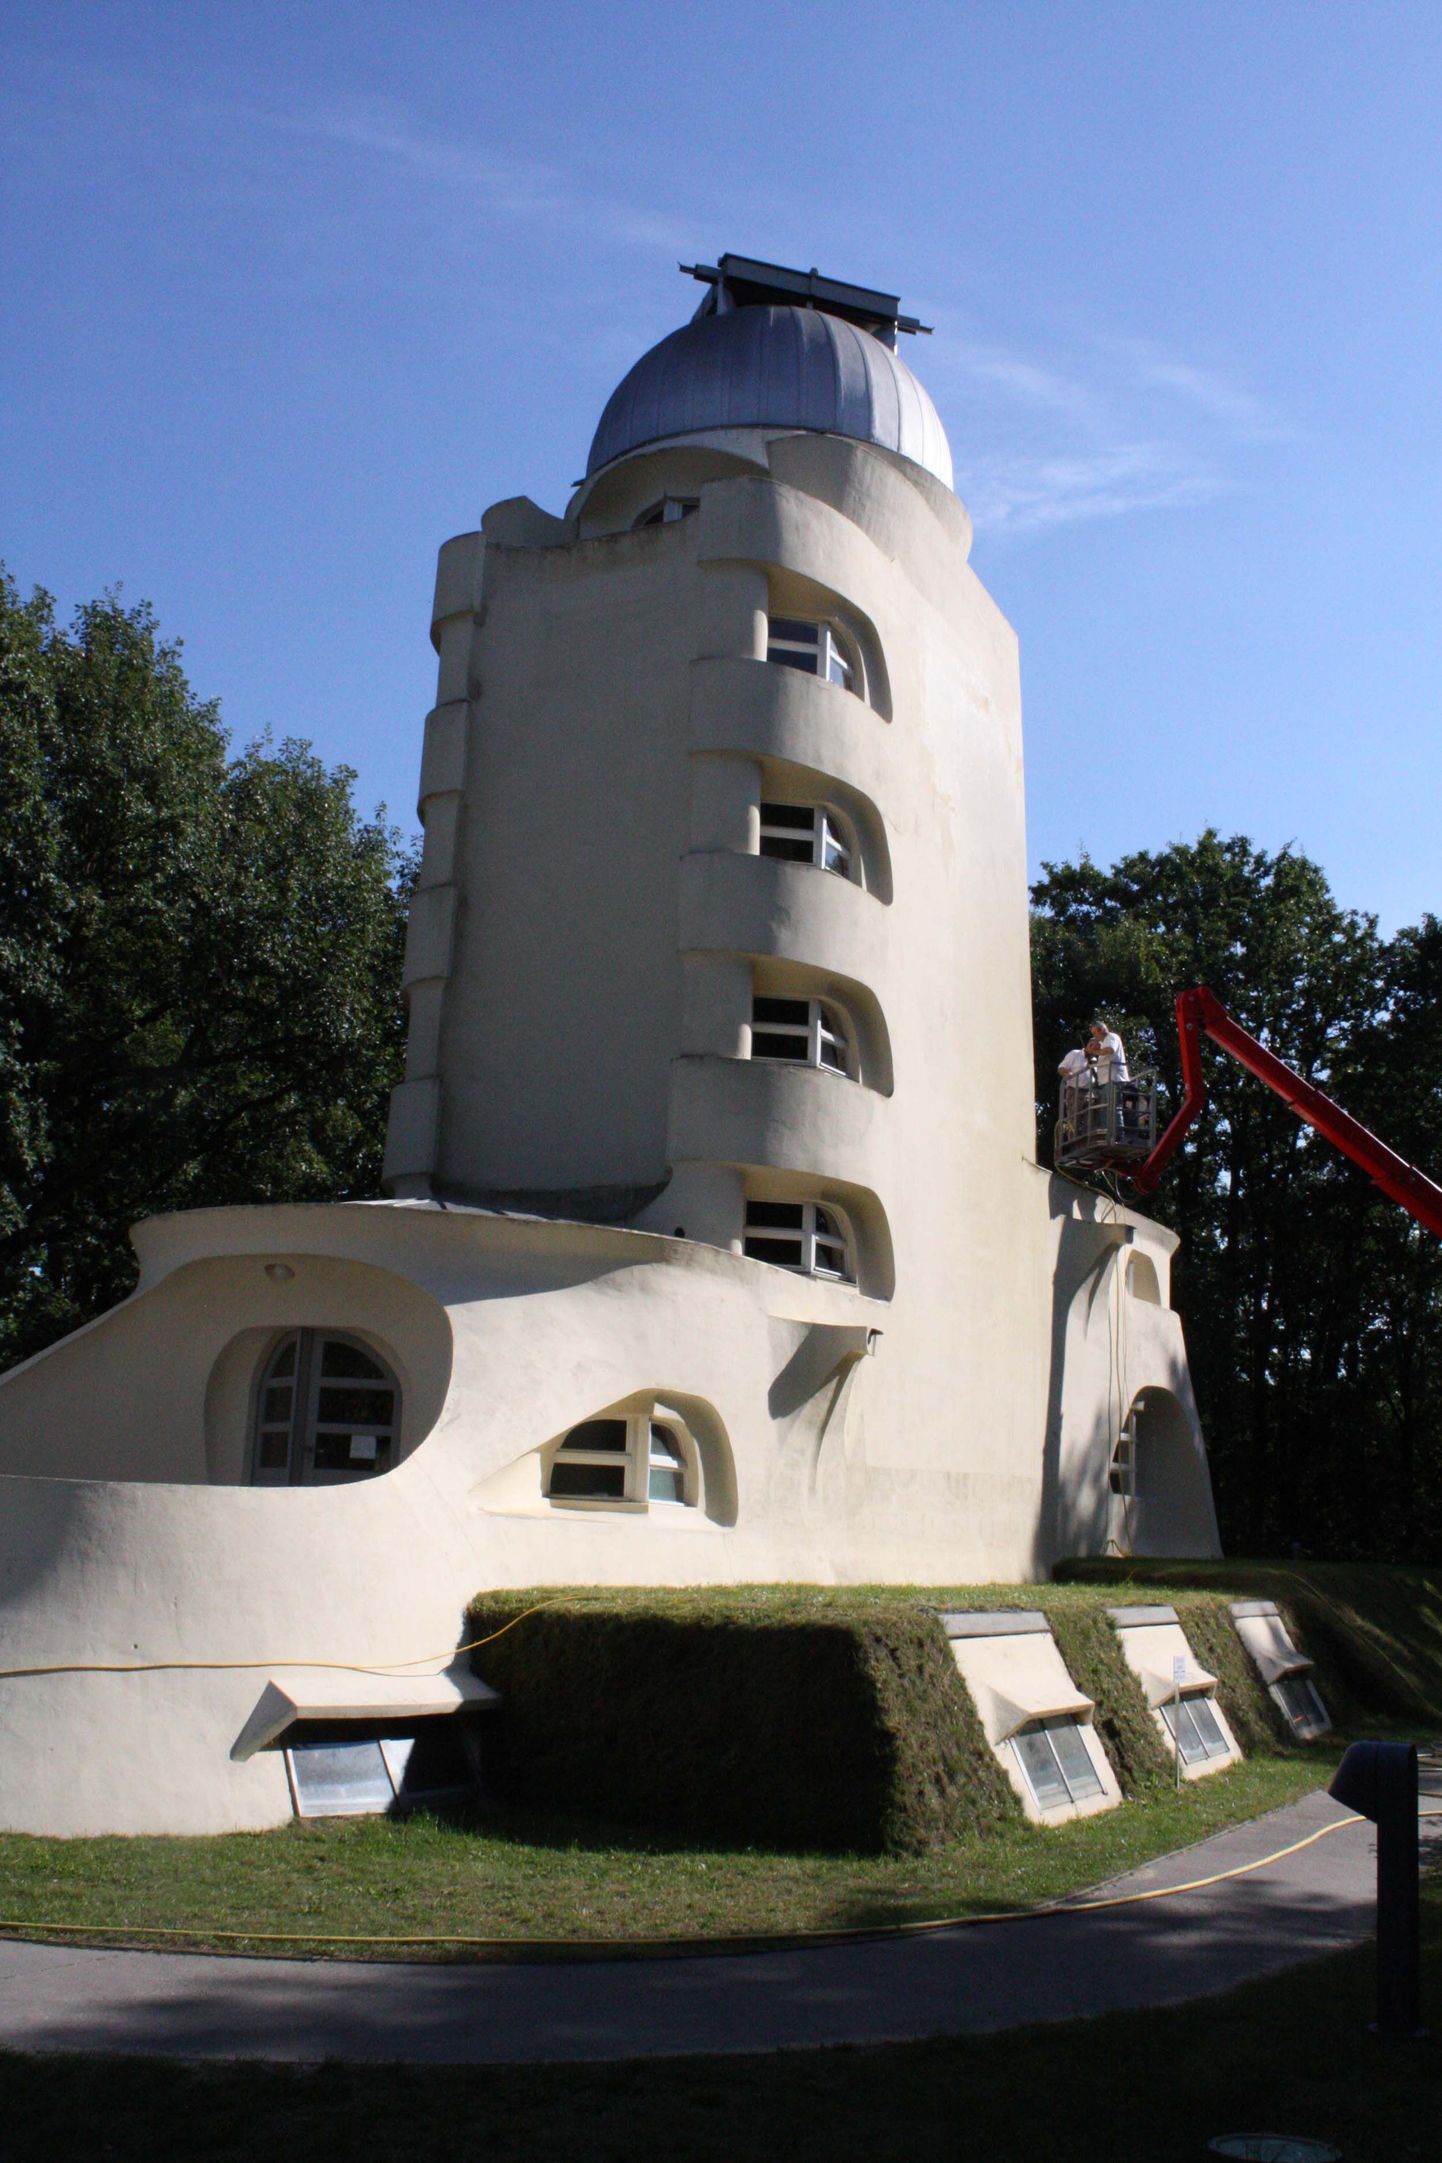 Saksamaal Berliini lähedal Potsdamis Telegrafenbergi ehk Telegraafimäe teaduspargis võib näha kummalist ja veidike kuulsa kataloonlase Antoni Gaudí art nouveau stiili meenutavat torni. Kuid see pole Gaudí projekteeritud, vaid hoopis saksa arhitekti Erich Mendelsoni looming. 1921. aastal valminud ekspressionistlik torn ehitati selleks, et mõõta ülitäpselt Päikese gravitatsioonist tingitud üliväikesed spektrijoonte nihked, mida nüüd tuntakse punanihkena. Sellega püüti tõestada Einsteini üldrelatiivsusteooriat. Mistõttu kannab päikeseobservatoorium Einsteini torni nime. Einstein selles ei töötanud, küll aga toetas päikeseteleskoobi ehitamist ja külastas seda kord koos arhitektiga. Tema kommentaar torni arhitektuurile oli pärast mõnetunnilist mõtlemist lühike: „Orgaaniline.”